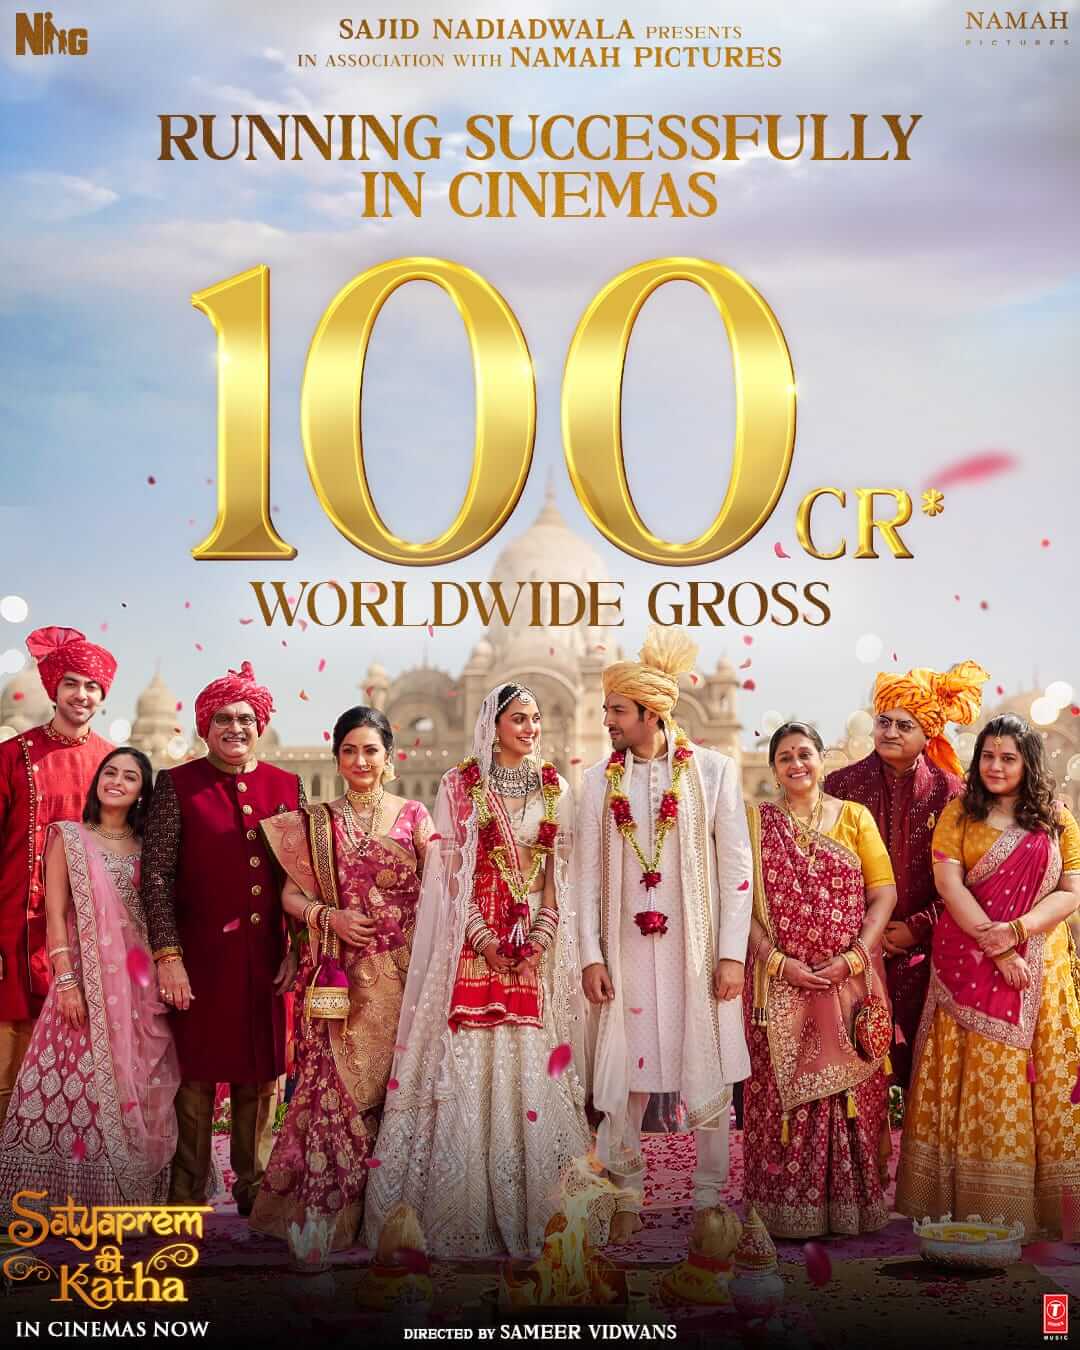 'सत्यप्रेम की कथा' बनी 100 करोड़ की कमाई करने वाली फिल्म , ग्लोबल लेवल पर अपनी शानदार जीत कराई दर्ज 20806